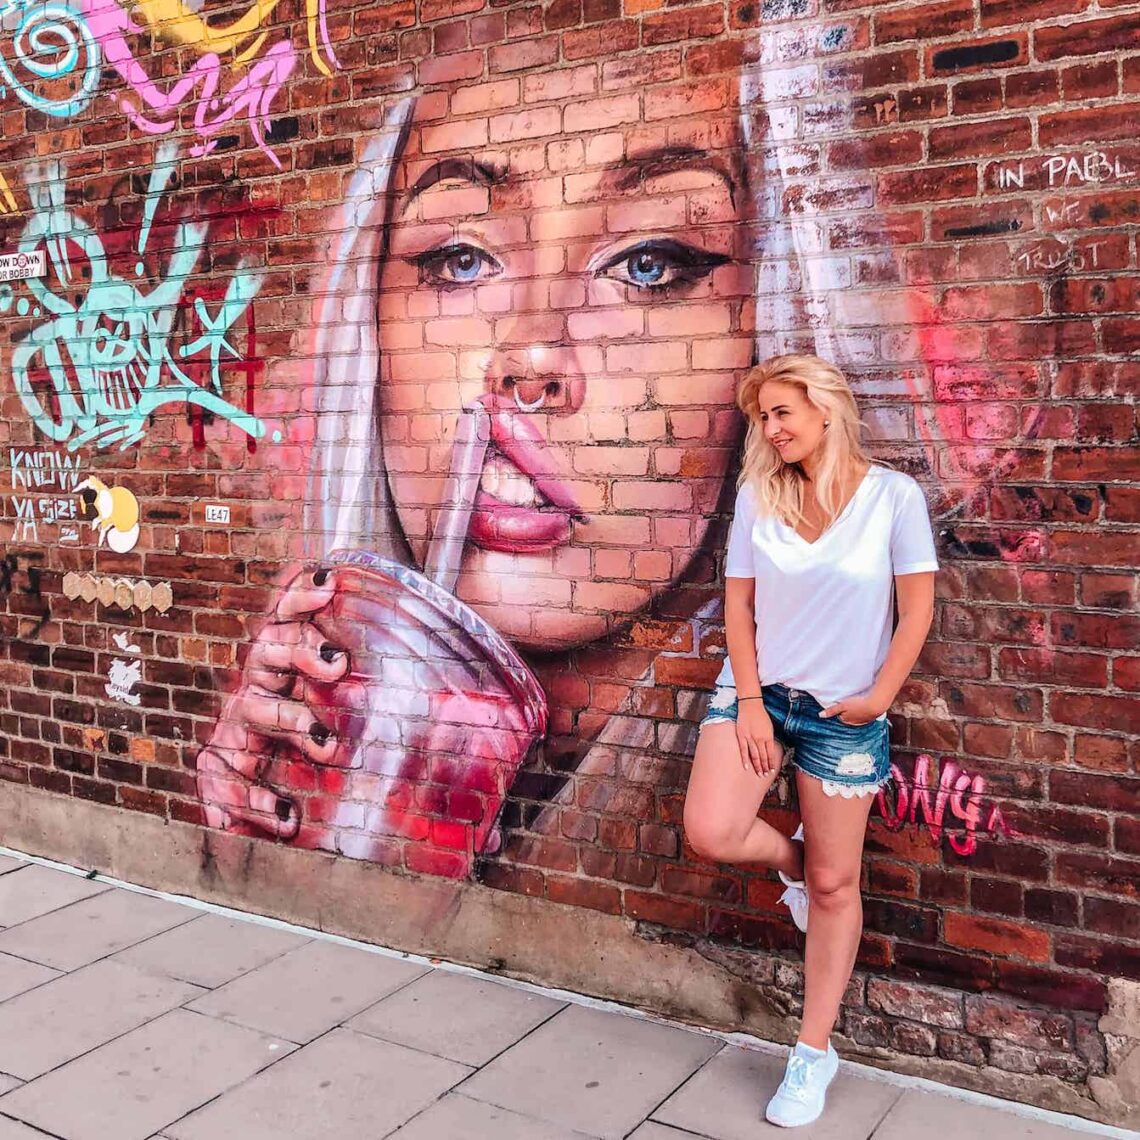 Liverpool Baltic Triangle, Co vidět v Liverpoolu, dívka u zdi pomalované graffiti